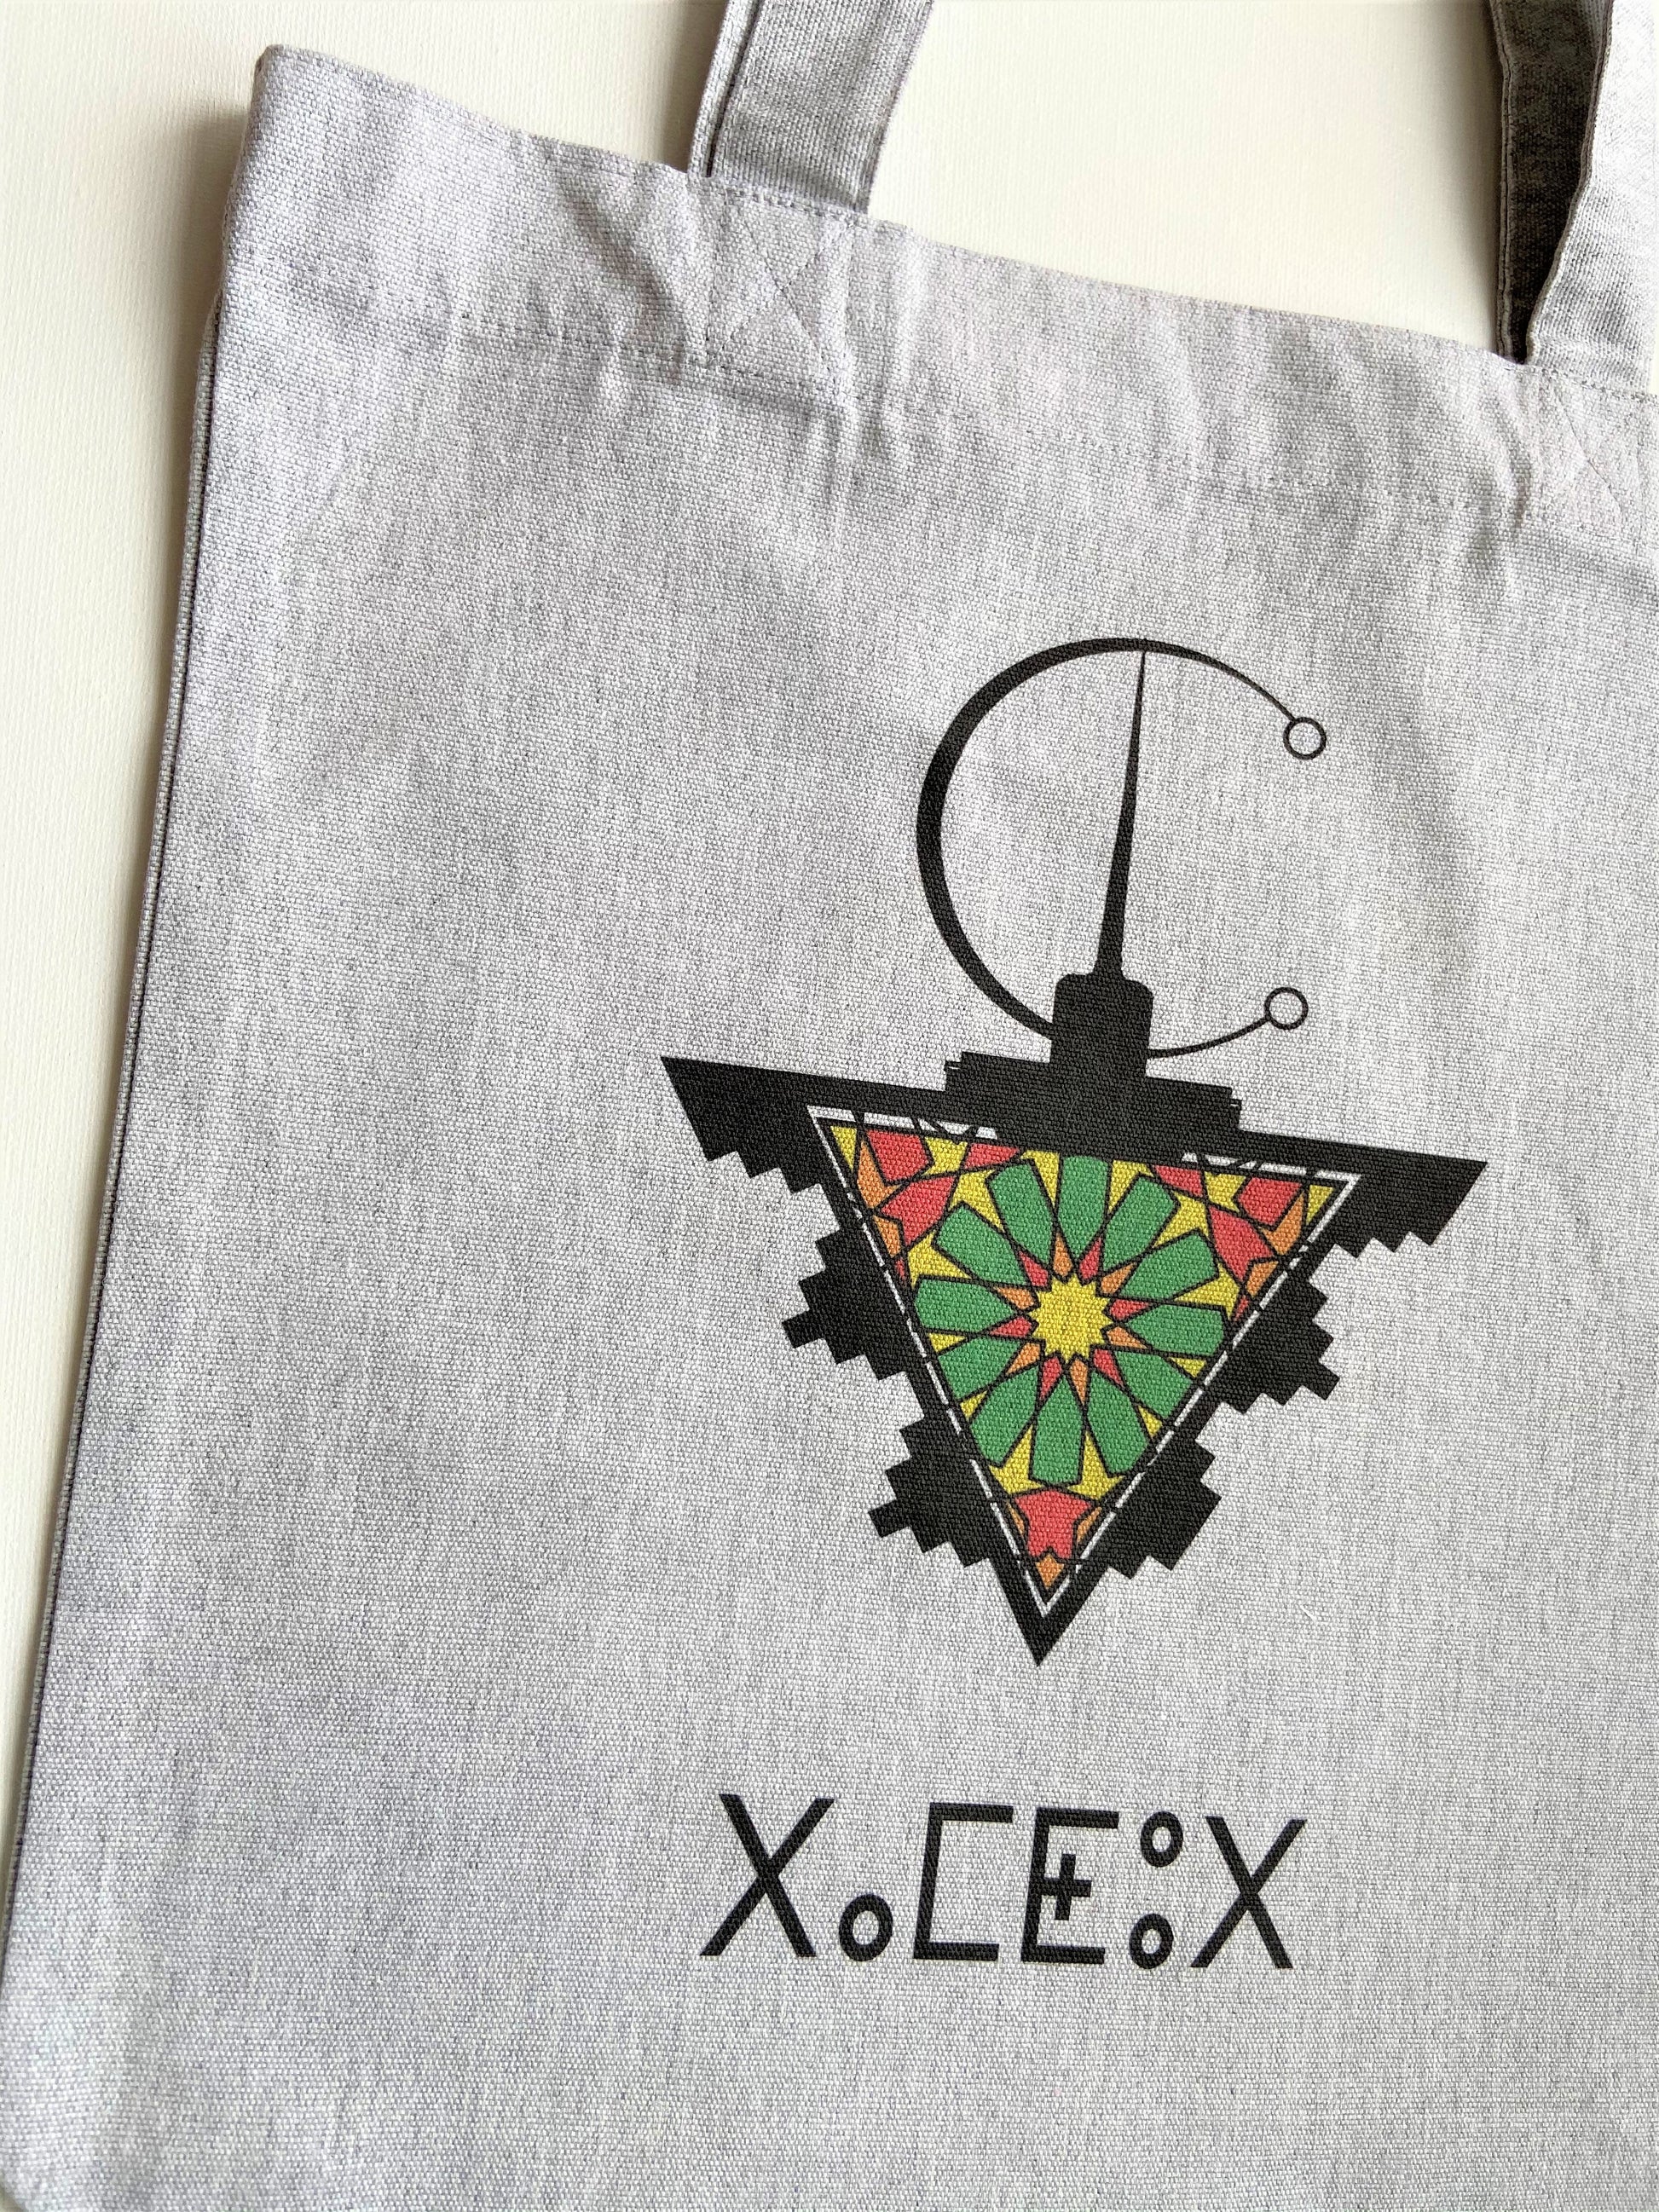 Tote bag "Femme" kabyle - Ghazel Boutique